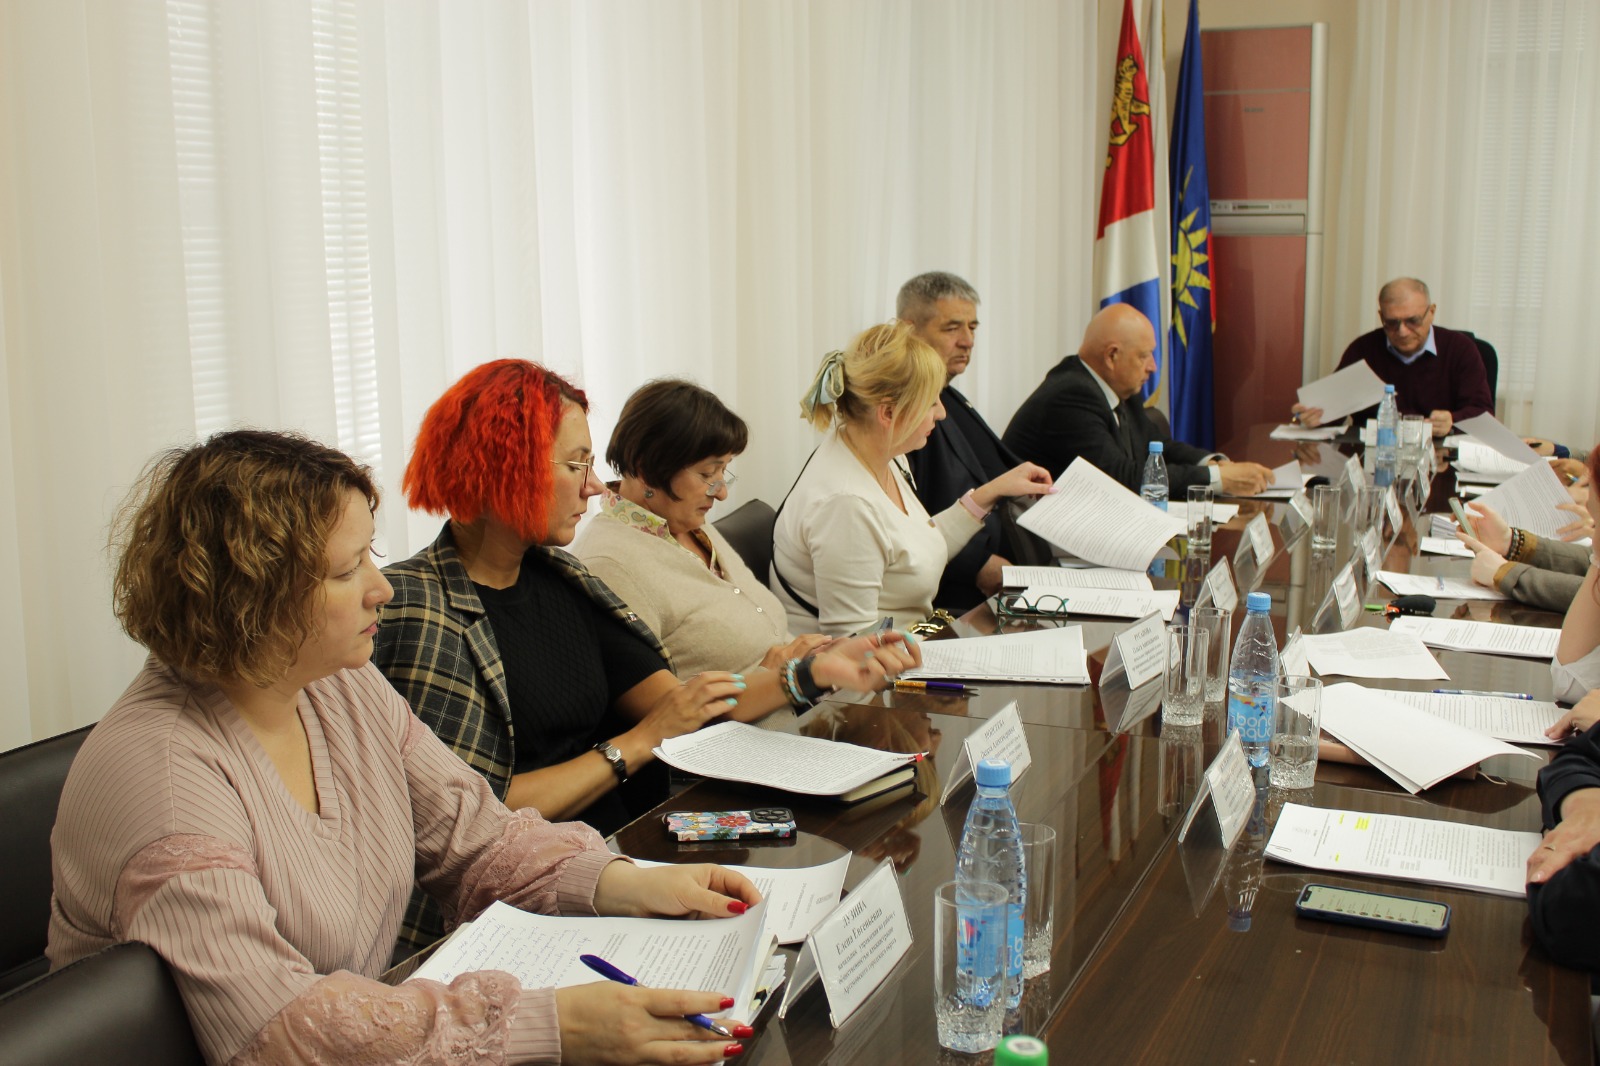 Заседание постоянной депутатской комиссии по вопросам законности и защиты прав граждан состоялось сегодня в Думе Артема под председательством депутата Виктора Наврося